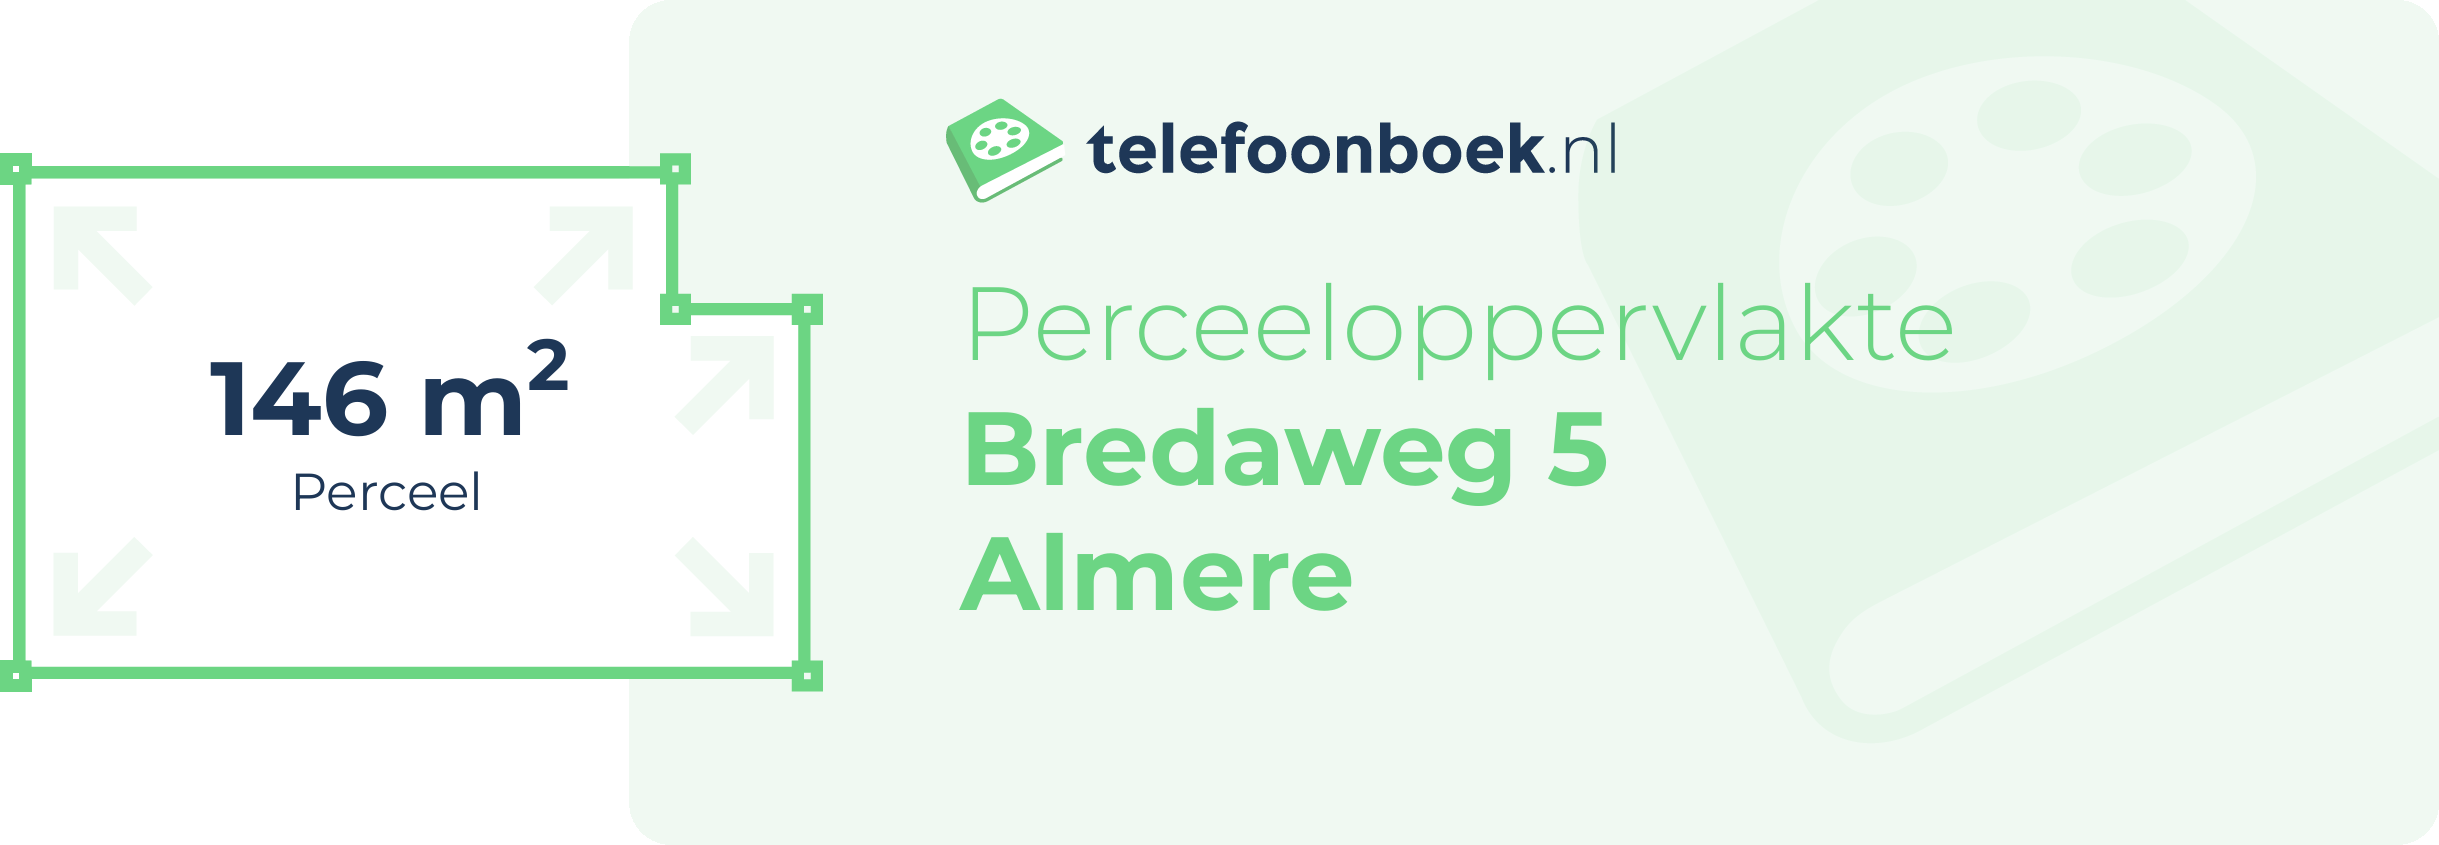 Perceeloppervlakte Bredaweg 5 Almere